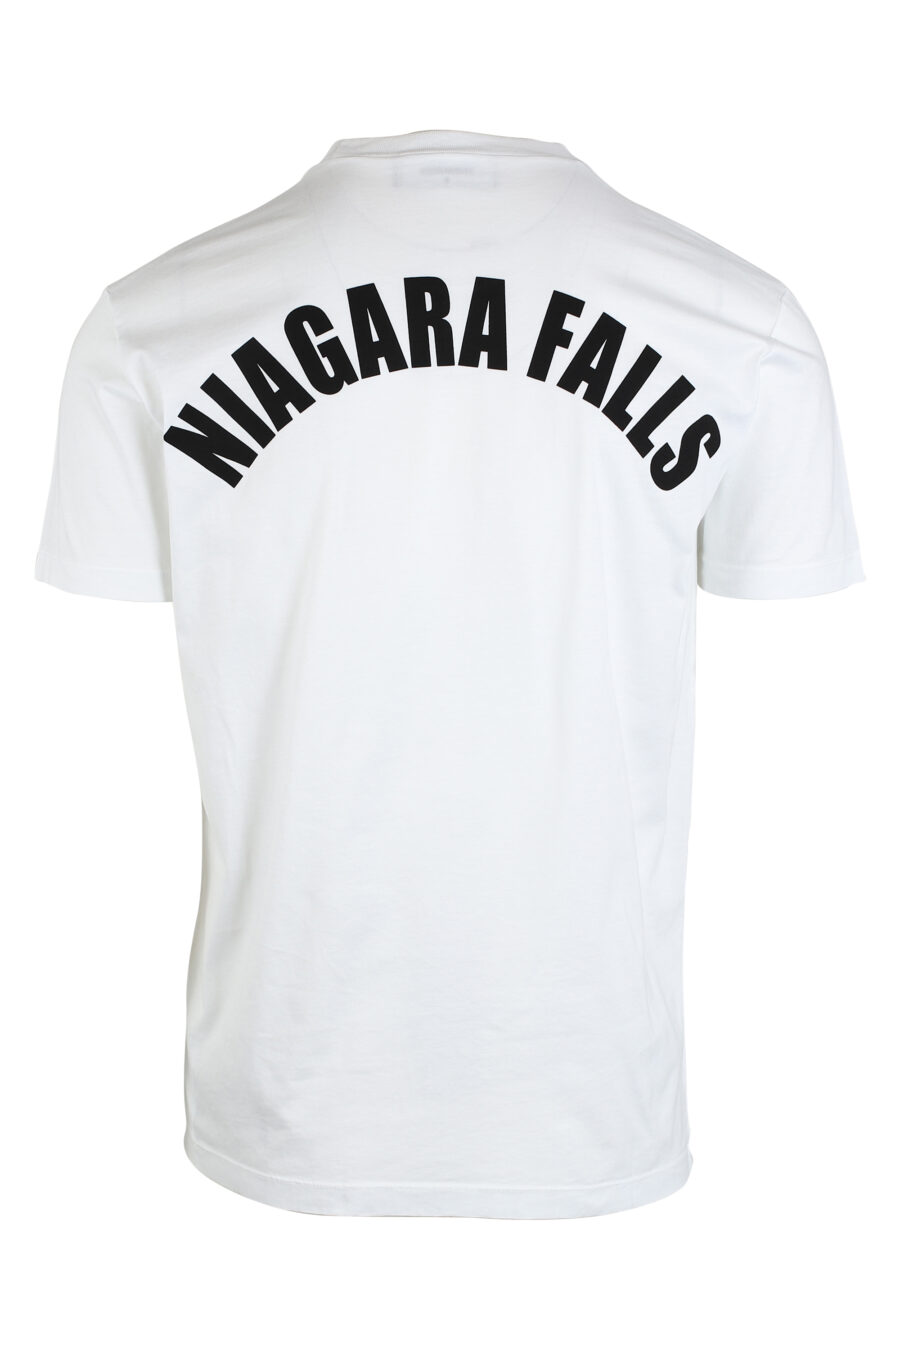 T-shirt branca com minilogo preto - IMG 0672